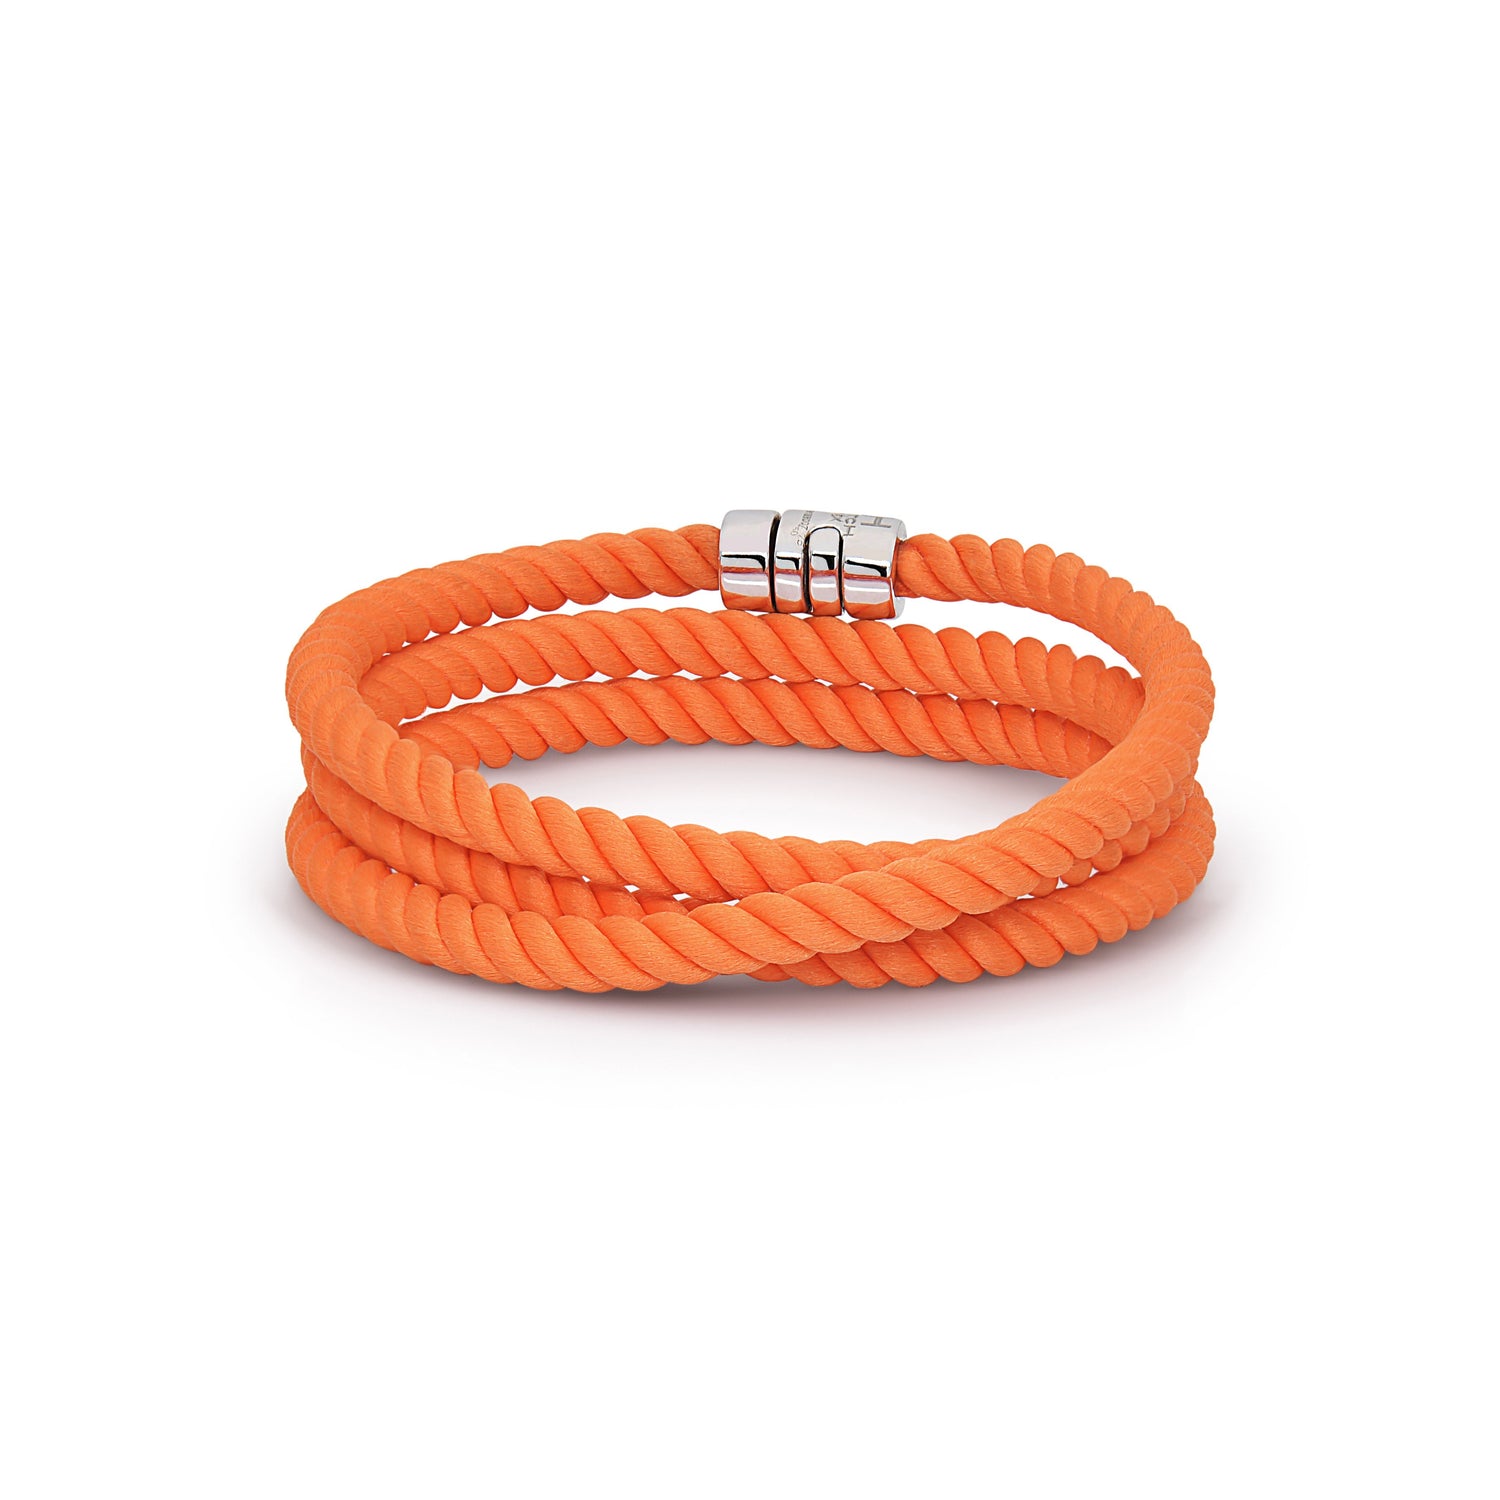 H.Aitch - Wrap Bracelet | Bridal jewelery set 